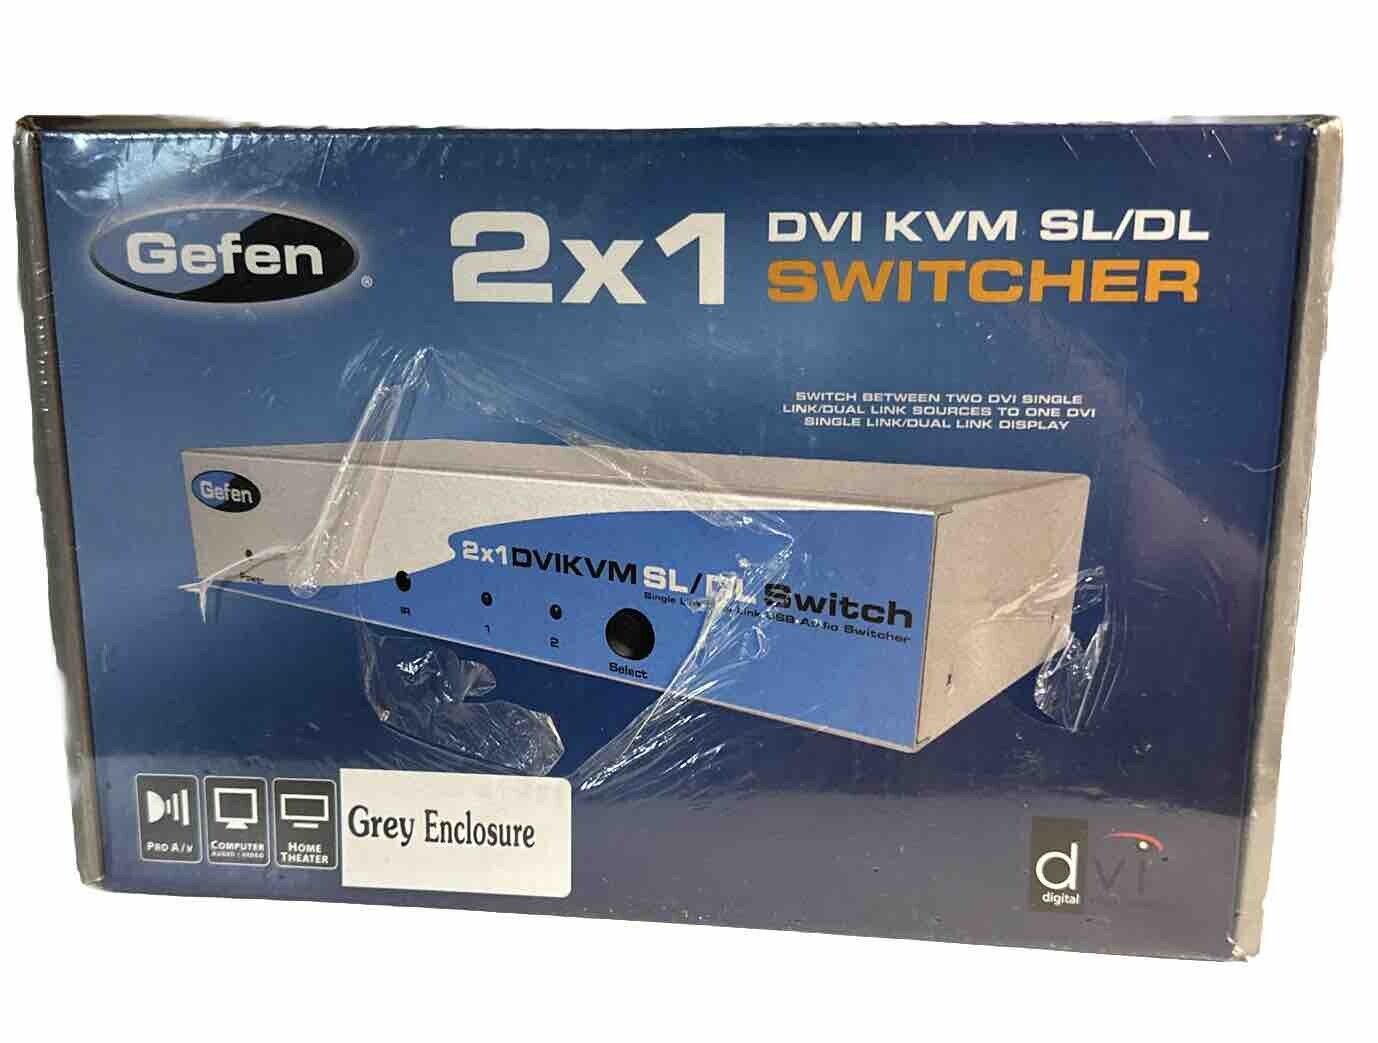 Gefen New 2x1 KVM SL/DL Switcher EXT-DVIKVM-241-DL-CO